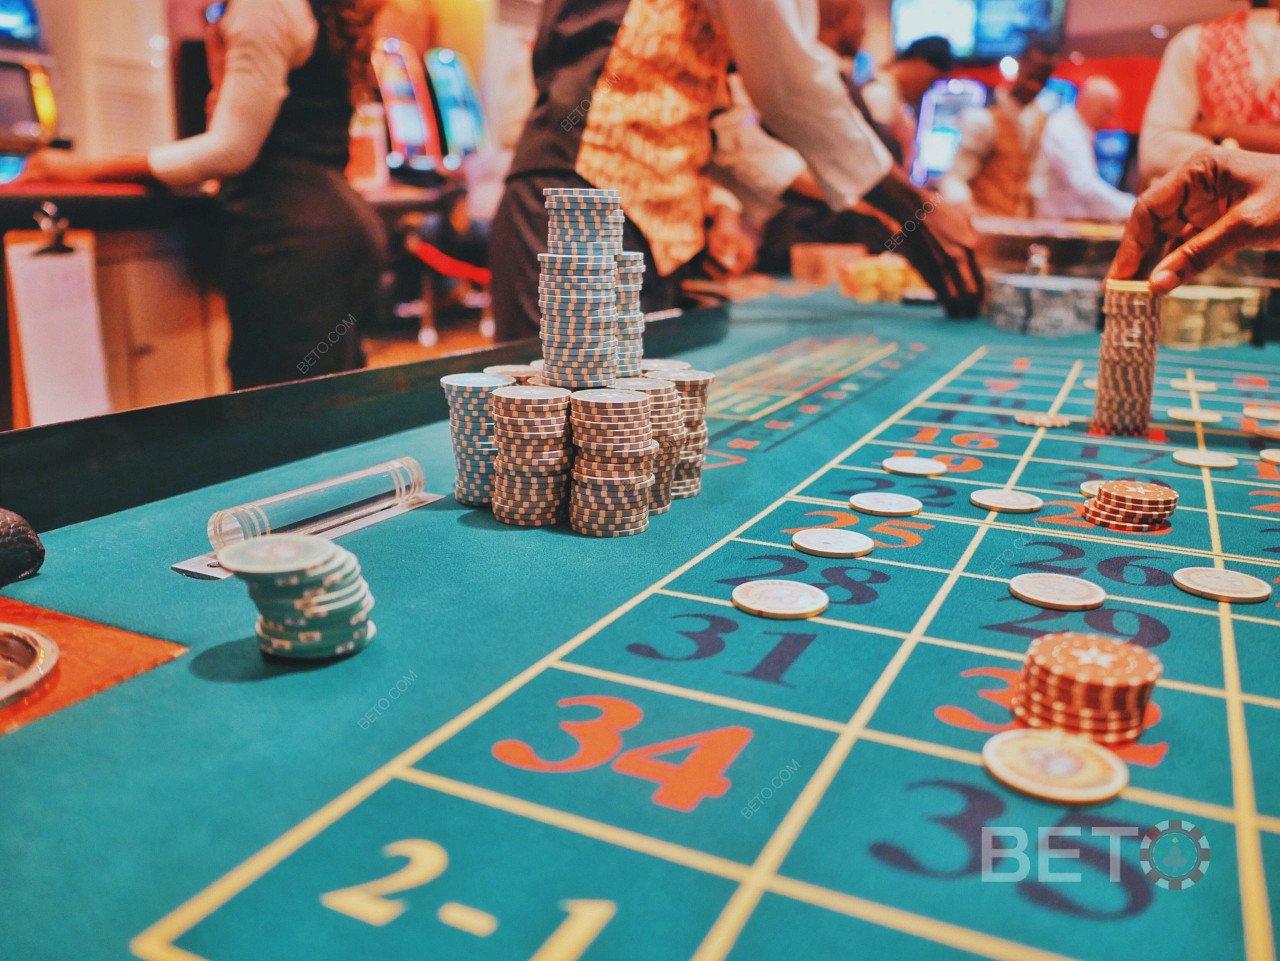 888 es uno de los mejores operadores de casino del mercado. Juega al blackjack y a otros juegos.